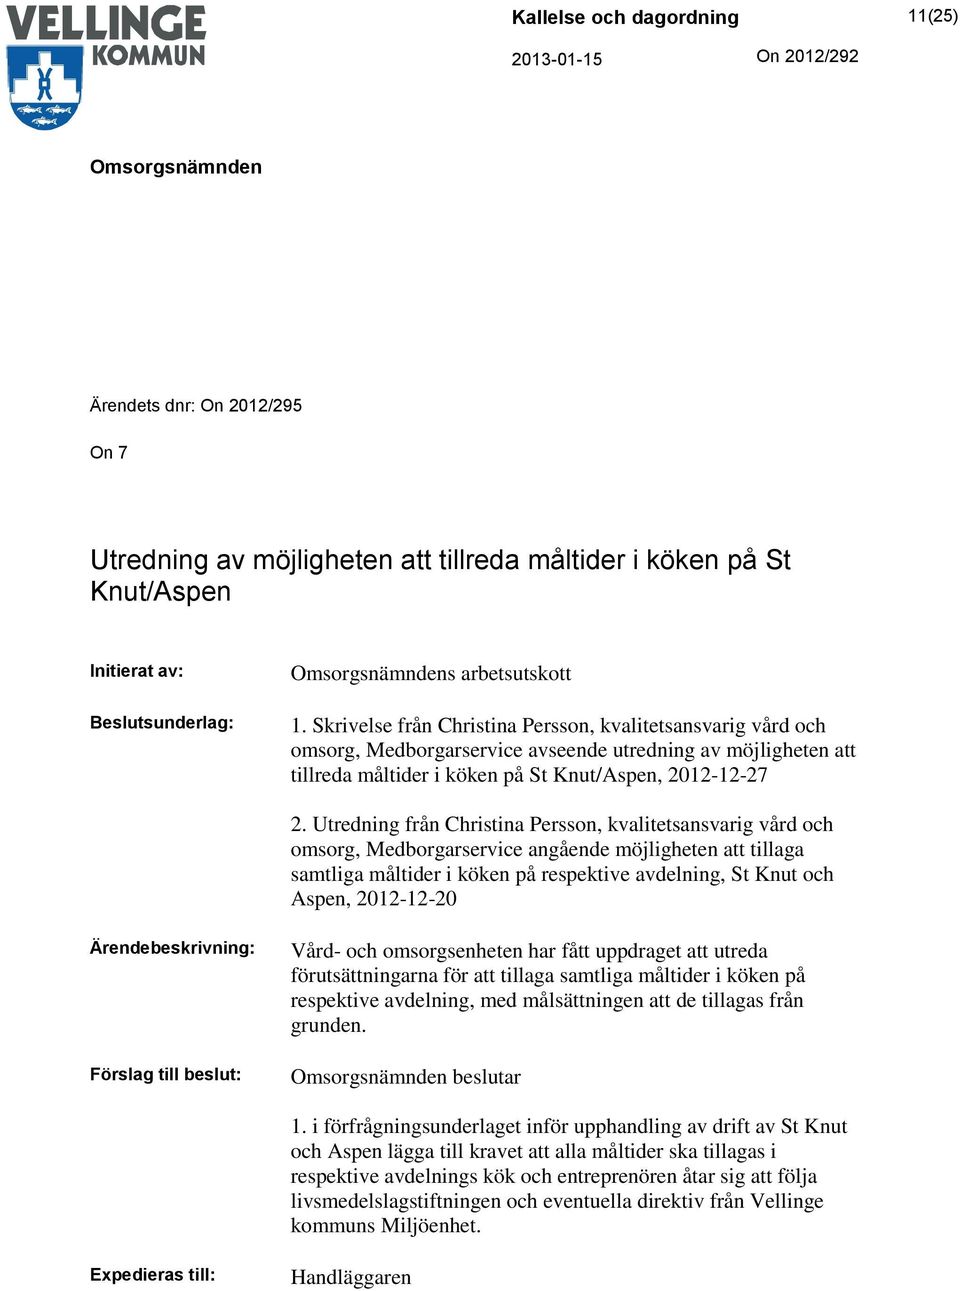 Utredning från Christina Persson, kvalitetsansvarig vård och omsorg, Medborgarservice angående möjligheten att tillaga samtliga måltider i köken på respektive avdelning, St Knut och Aspen, 2012-12-20